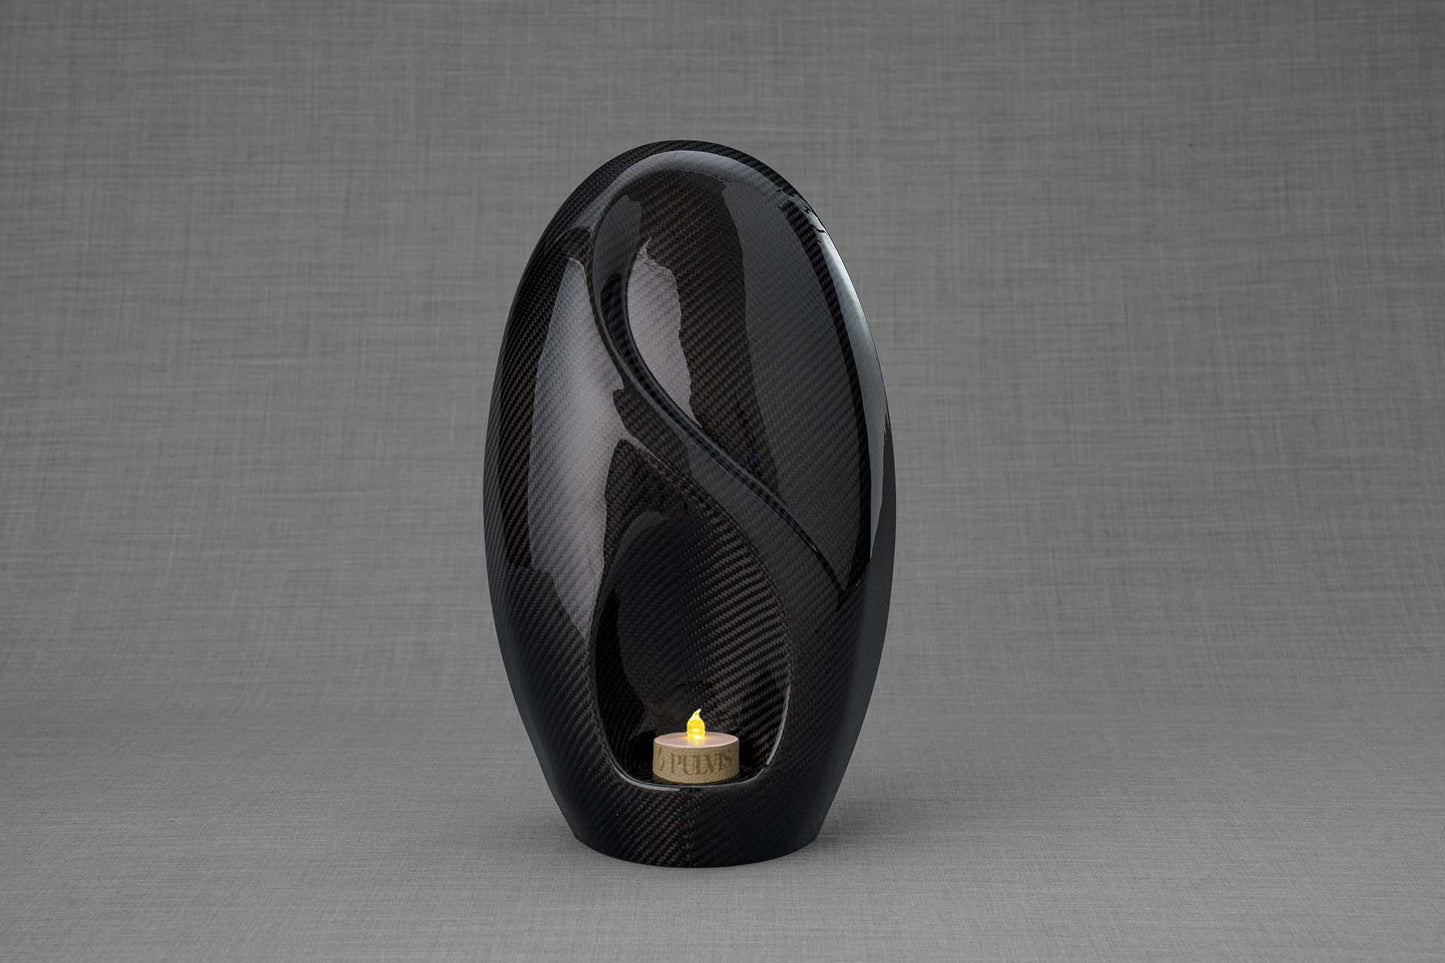 Pulvis Art Urns Adult Size Urn Carbon Fiber Cremation Urn "Eternity" - Twill Weave Carbon | Black | LED Candle